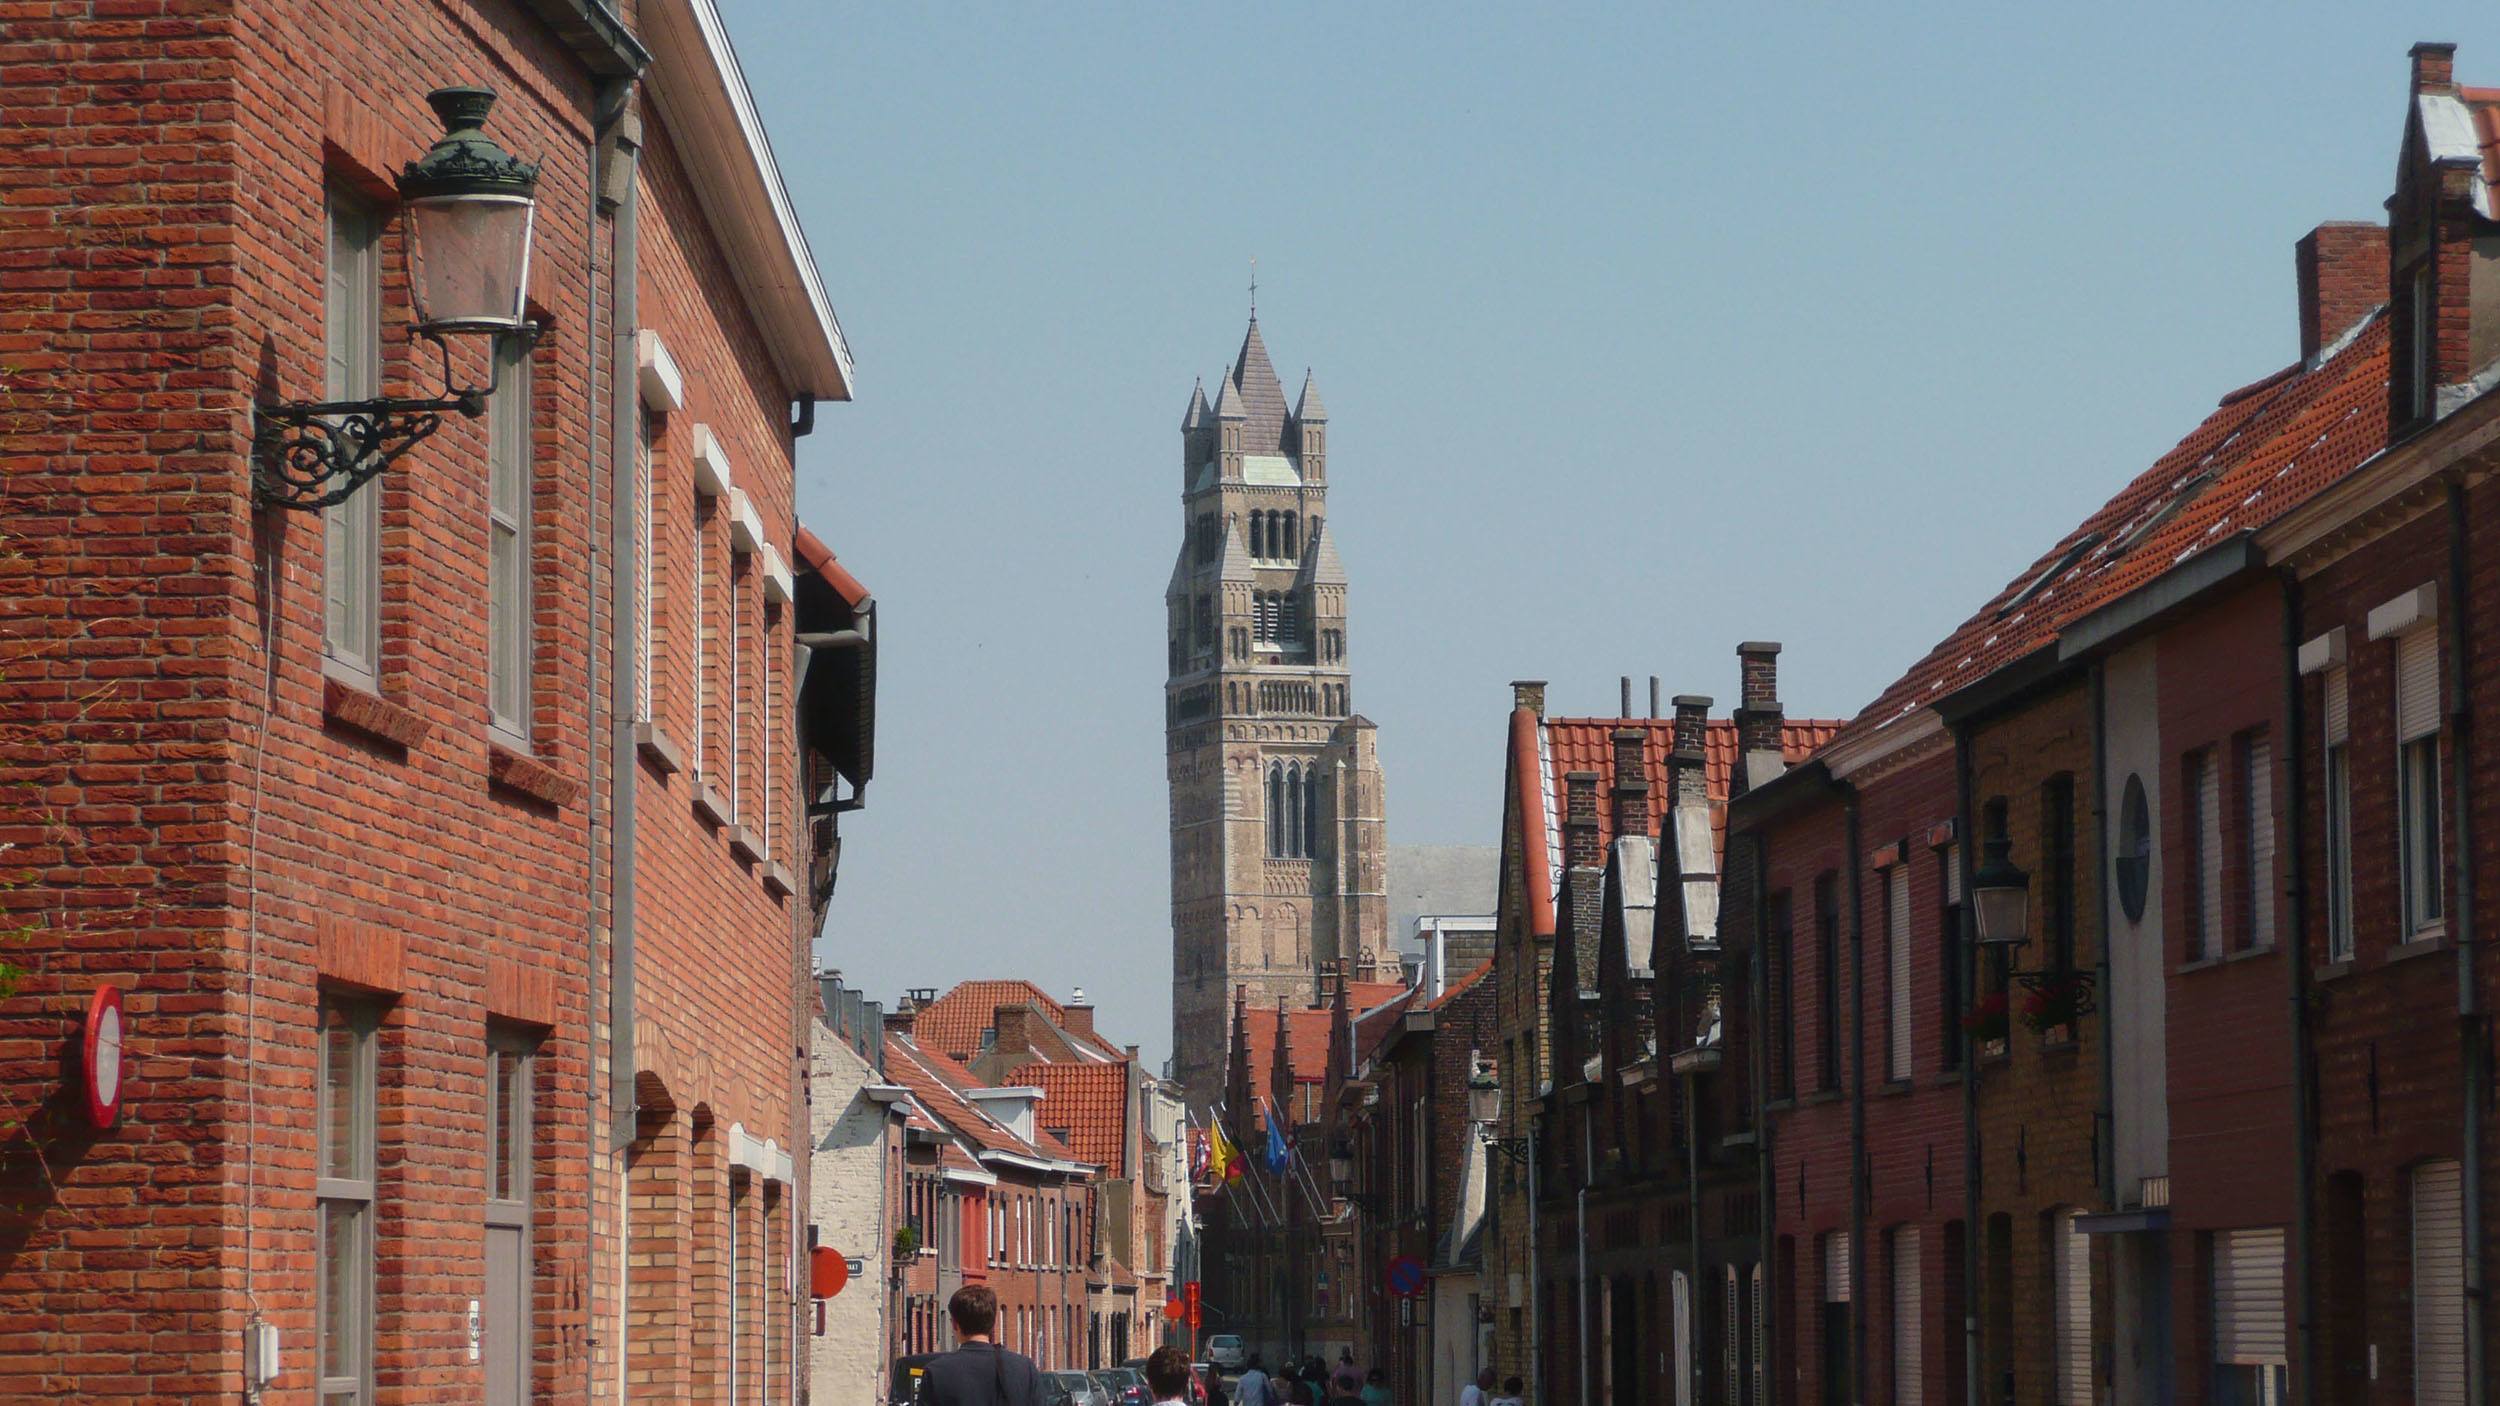 Saint Salvator Cathedral in Bruges Belgium